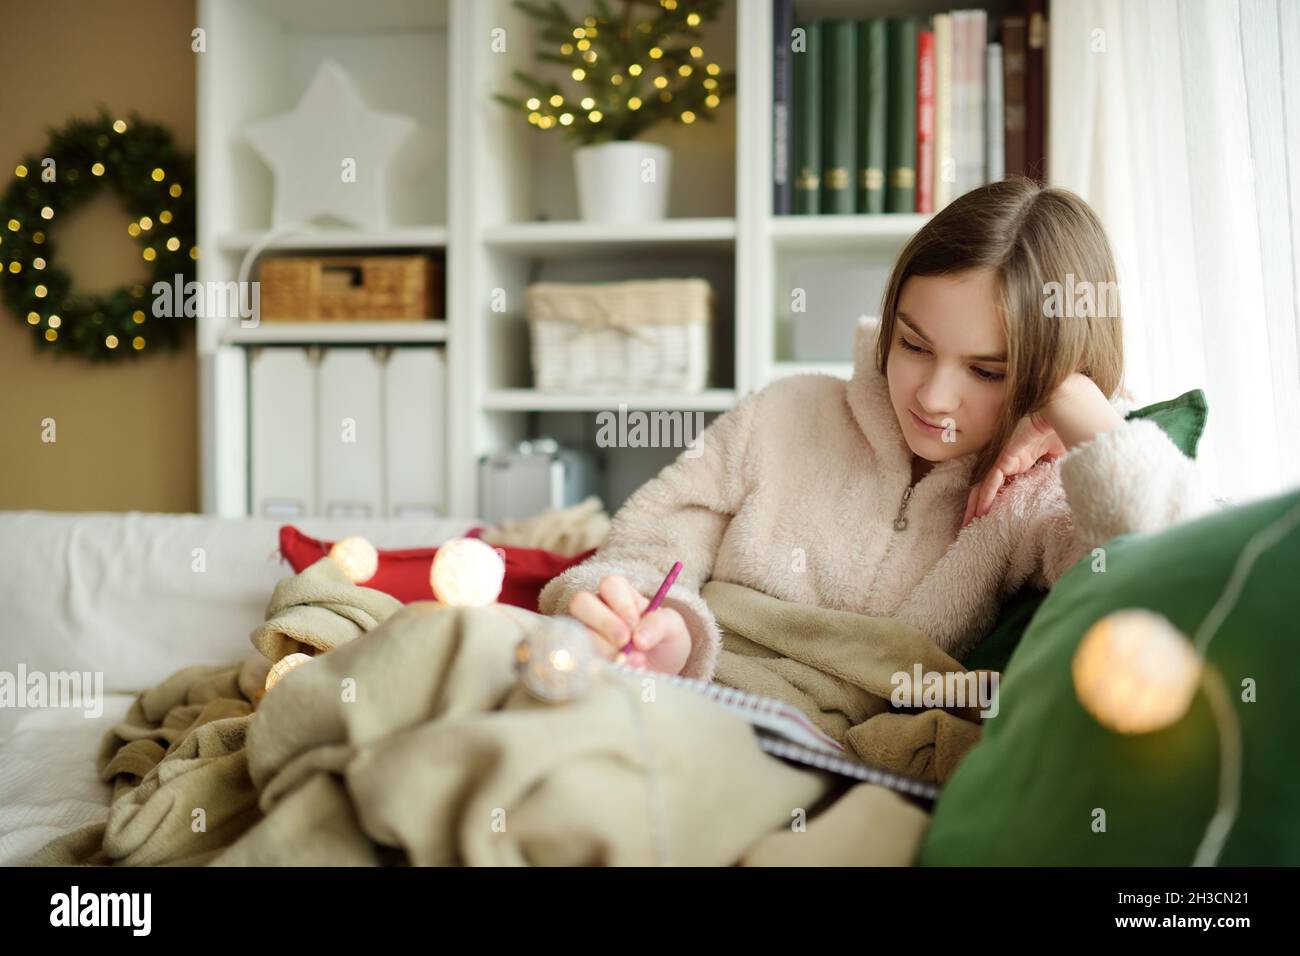 Belle adolescente étudiant ou esquissant accrocheuillé sur le canapé dans un salon confortable à Noël.Enfant mignon passant du temps à la maison pendant le winte Banque D'Images